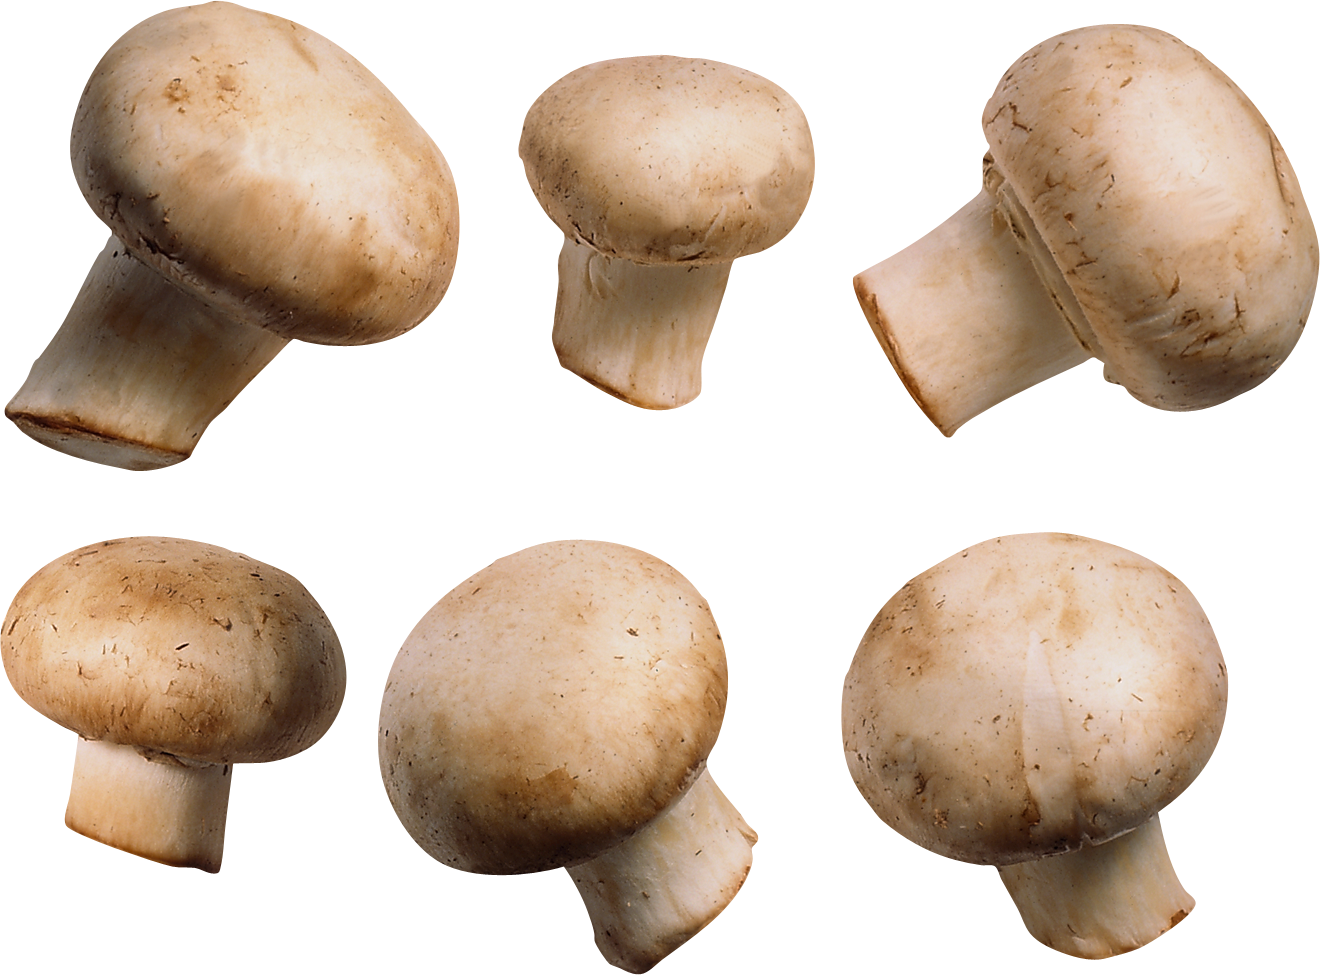 Mushroom Transparent Image